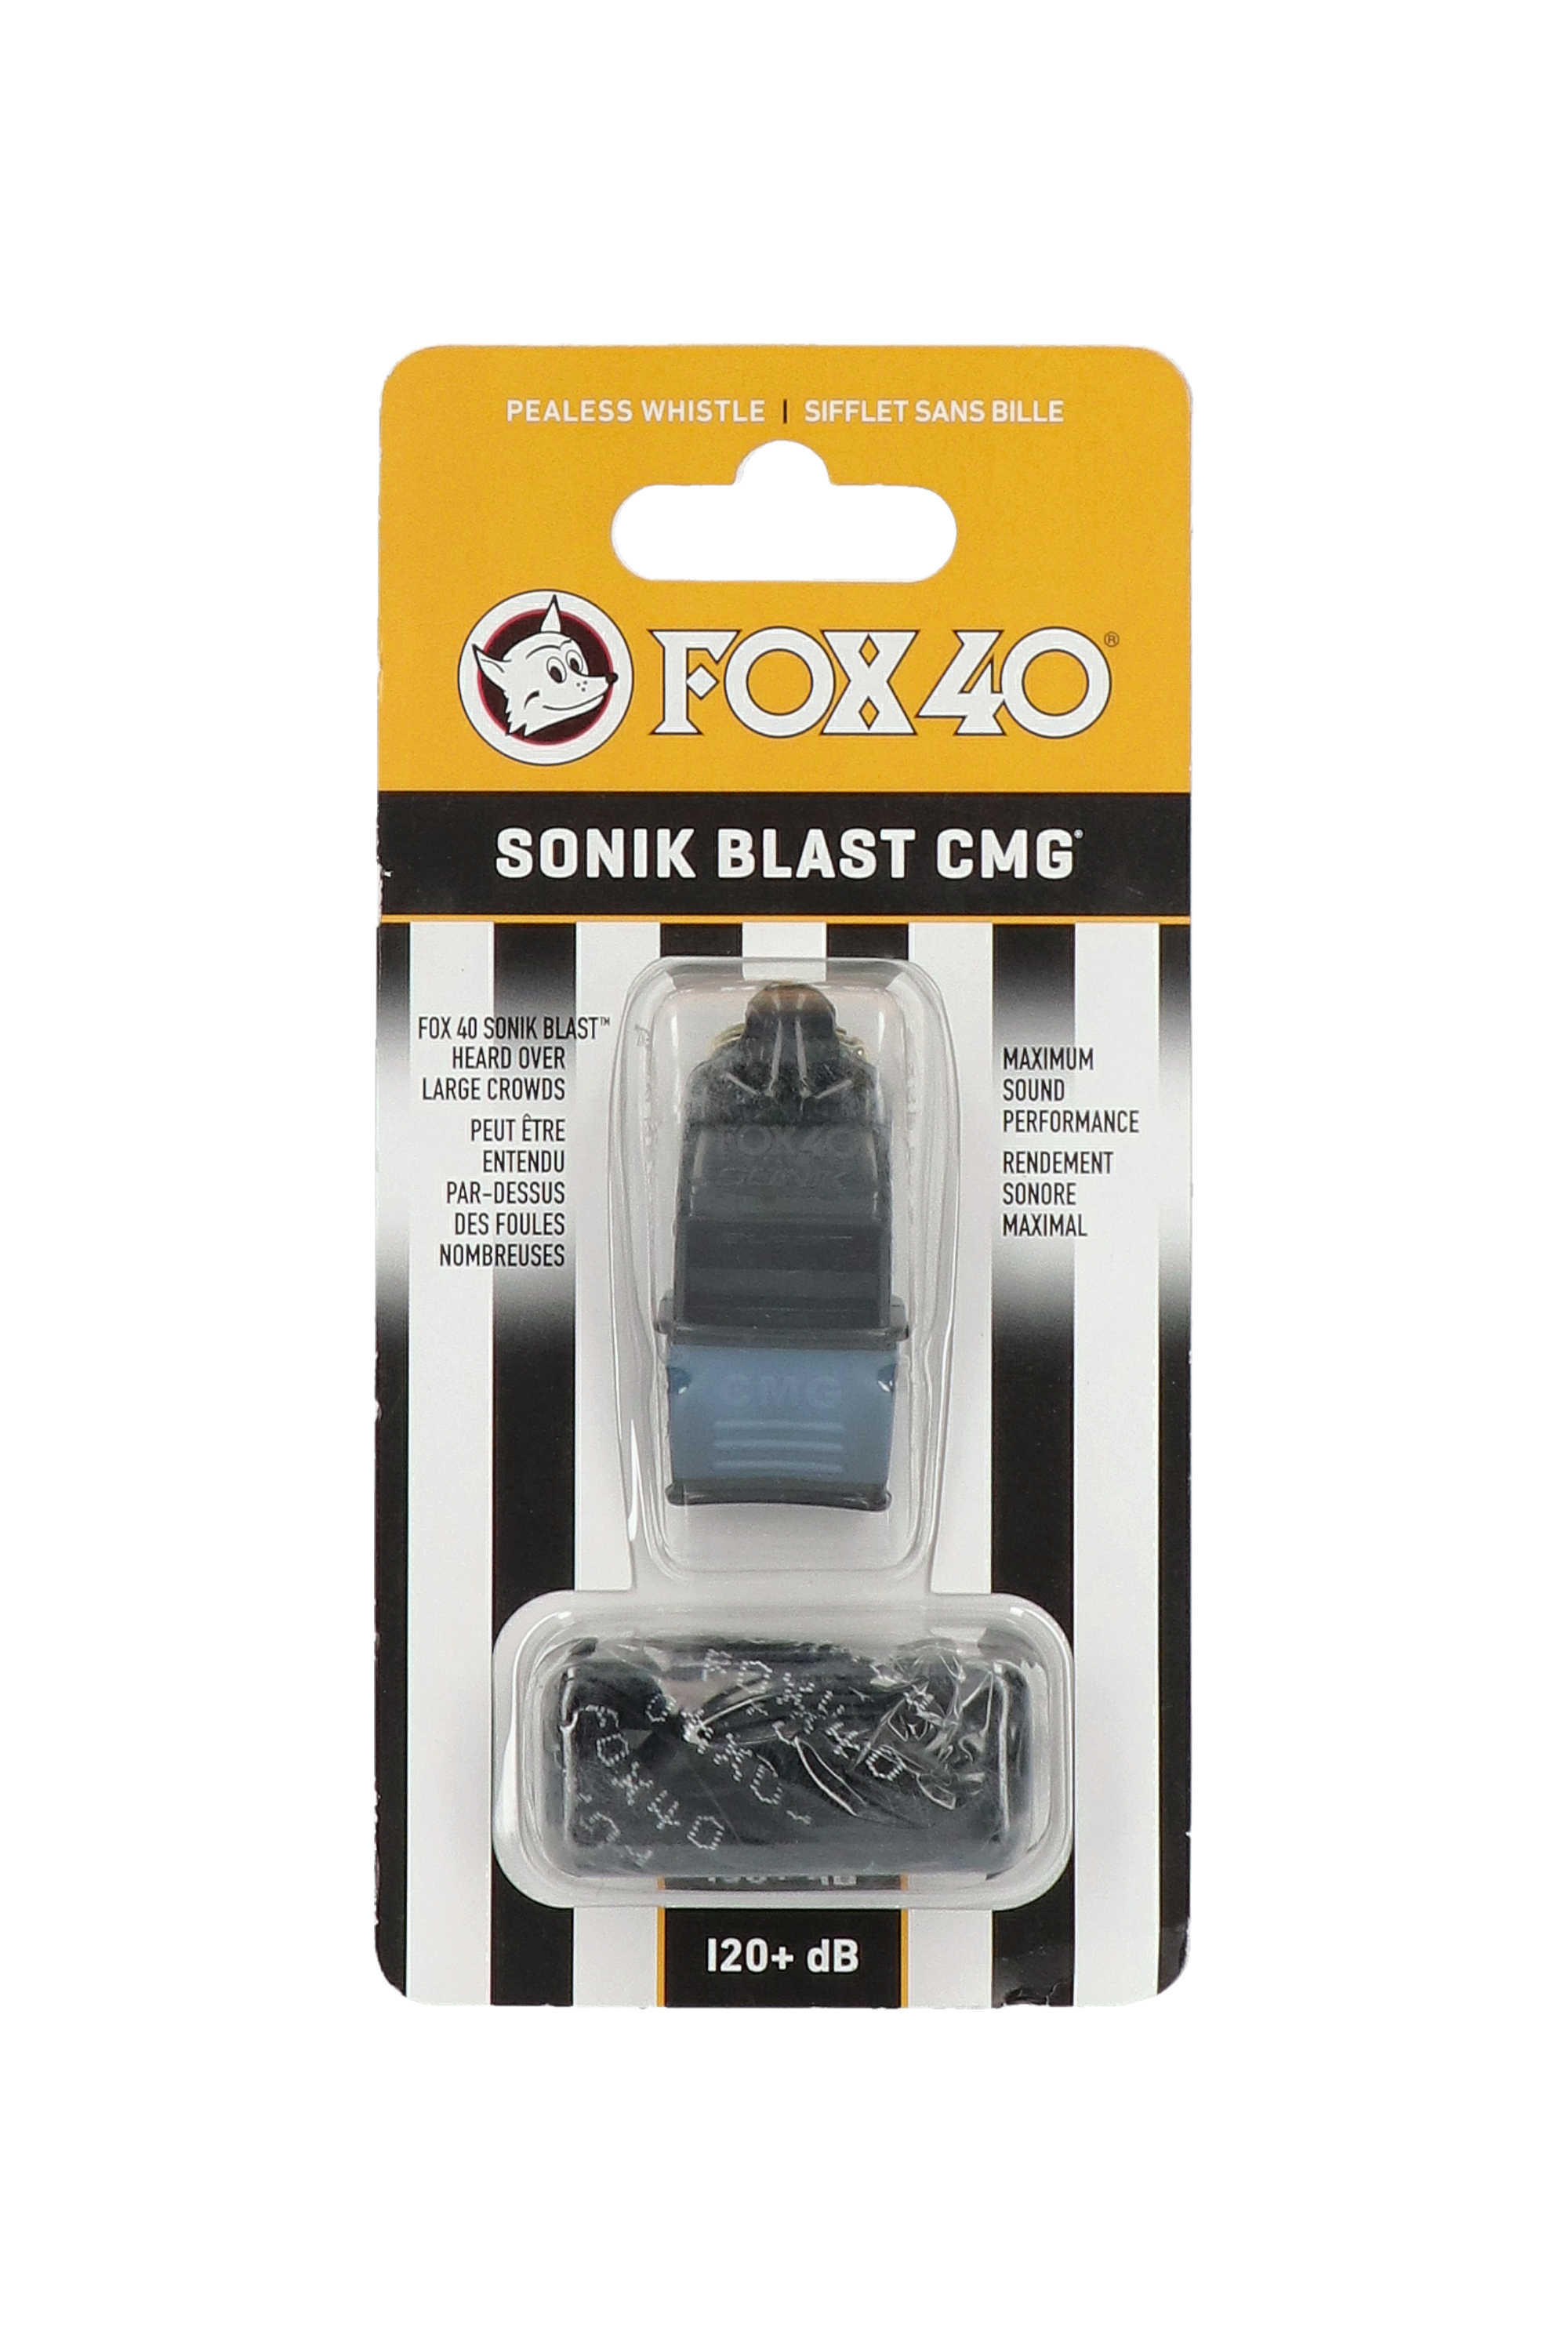 Fox 40 SONIK Blast CMG